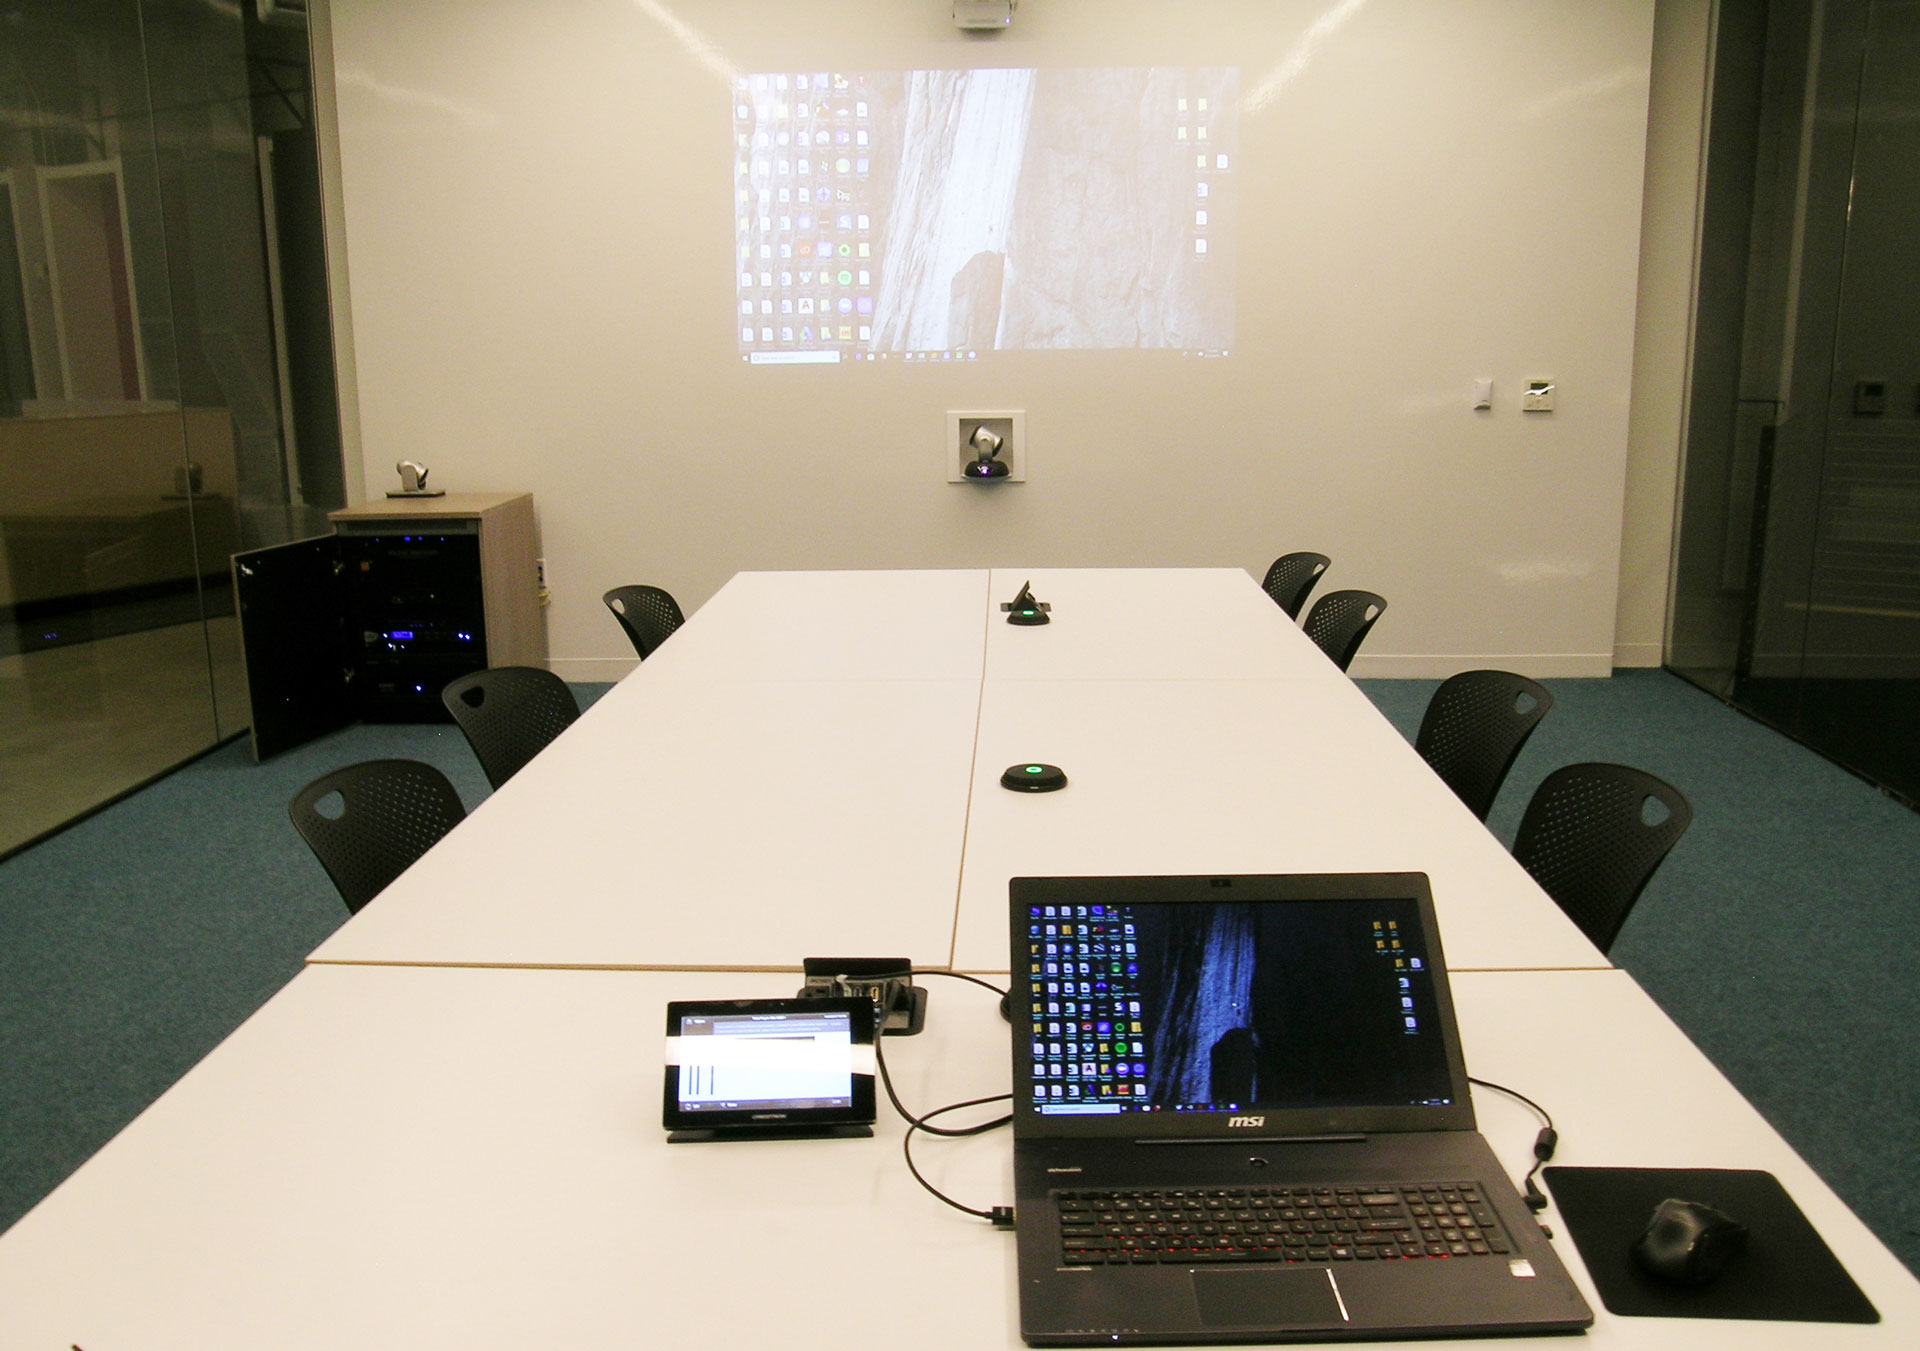 MGA fish bowl conference room wall projector